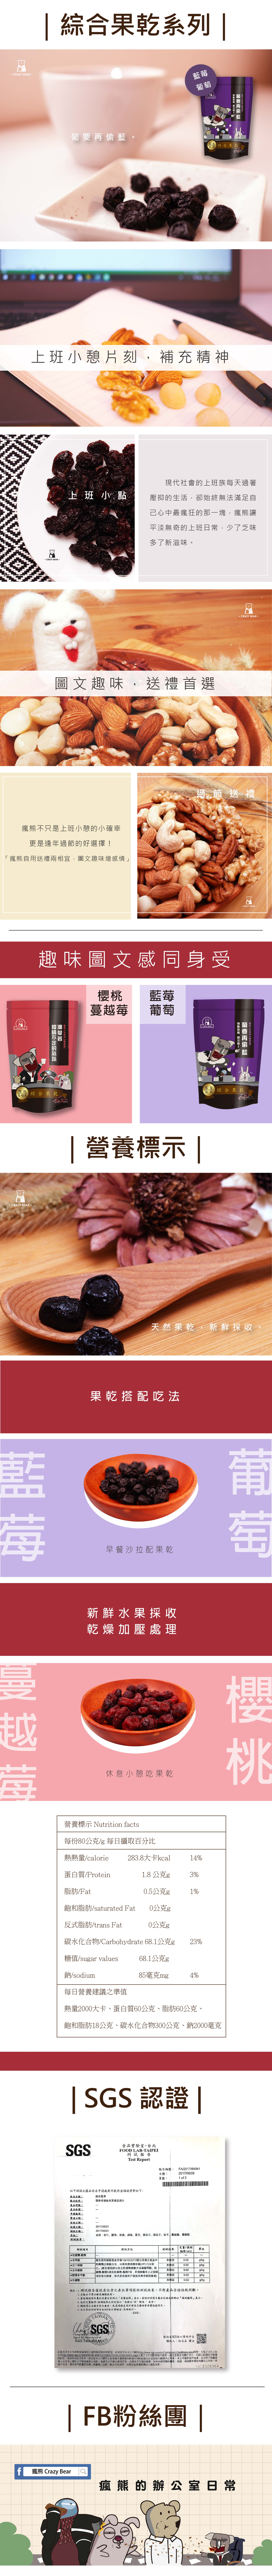 藍莓葡萄商品詳情-01.jpg